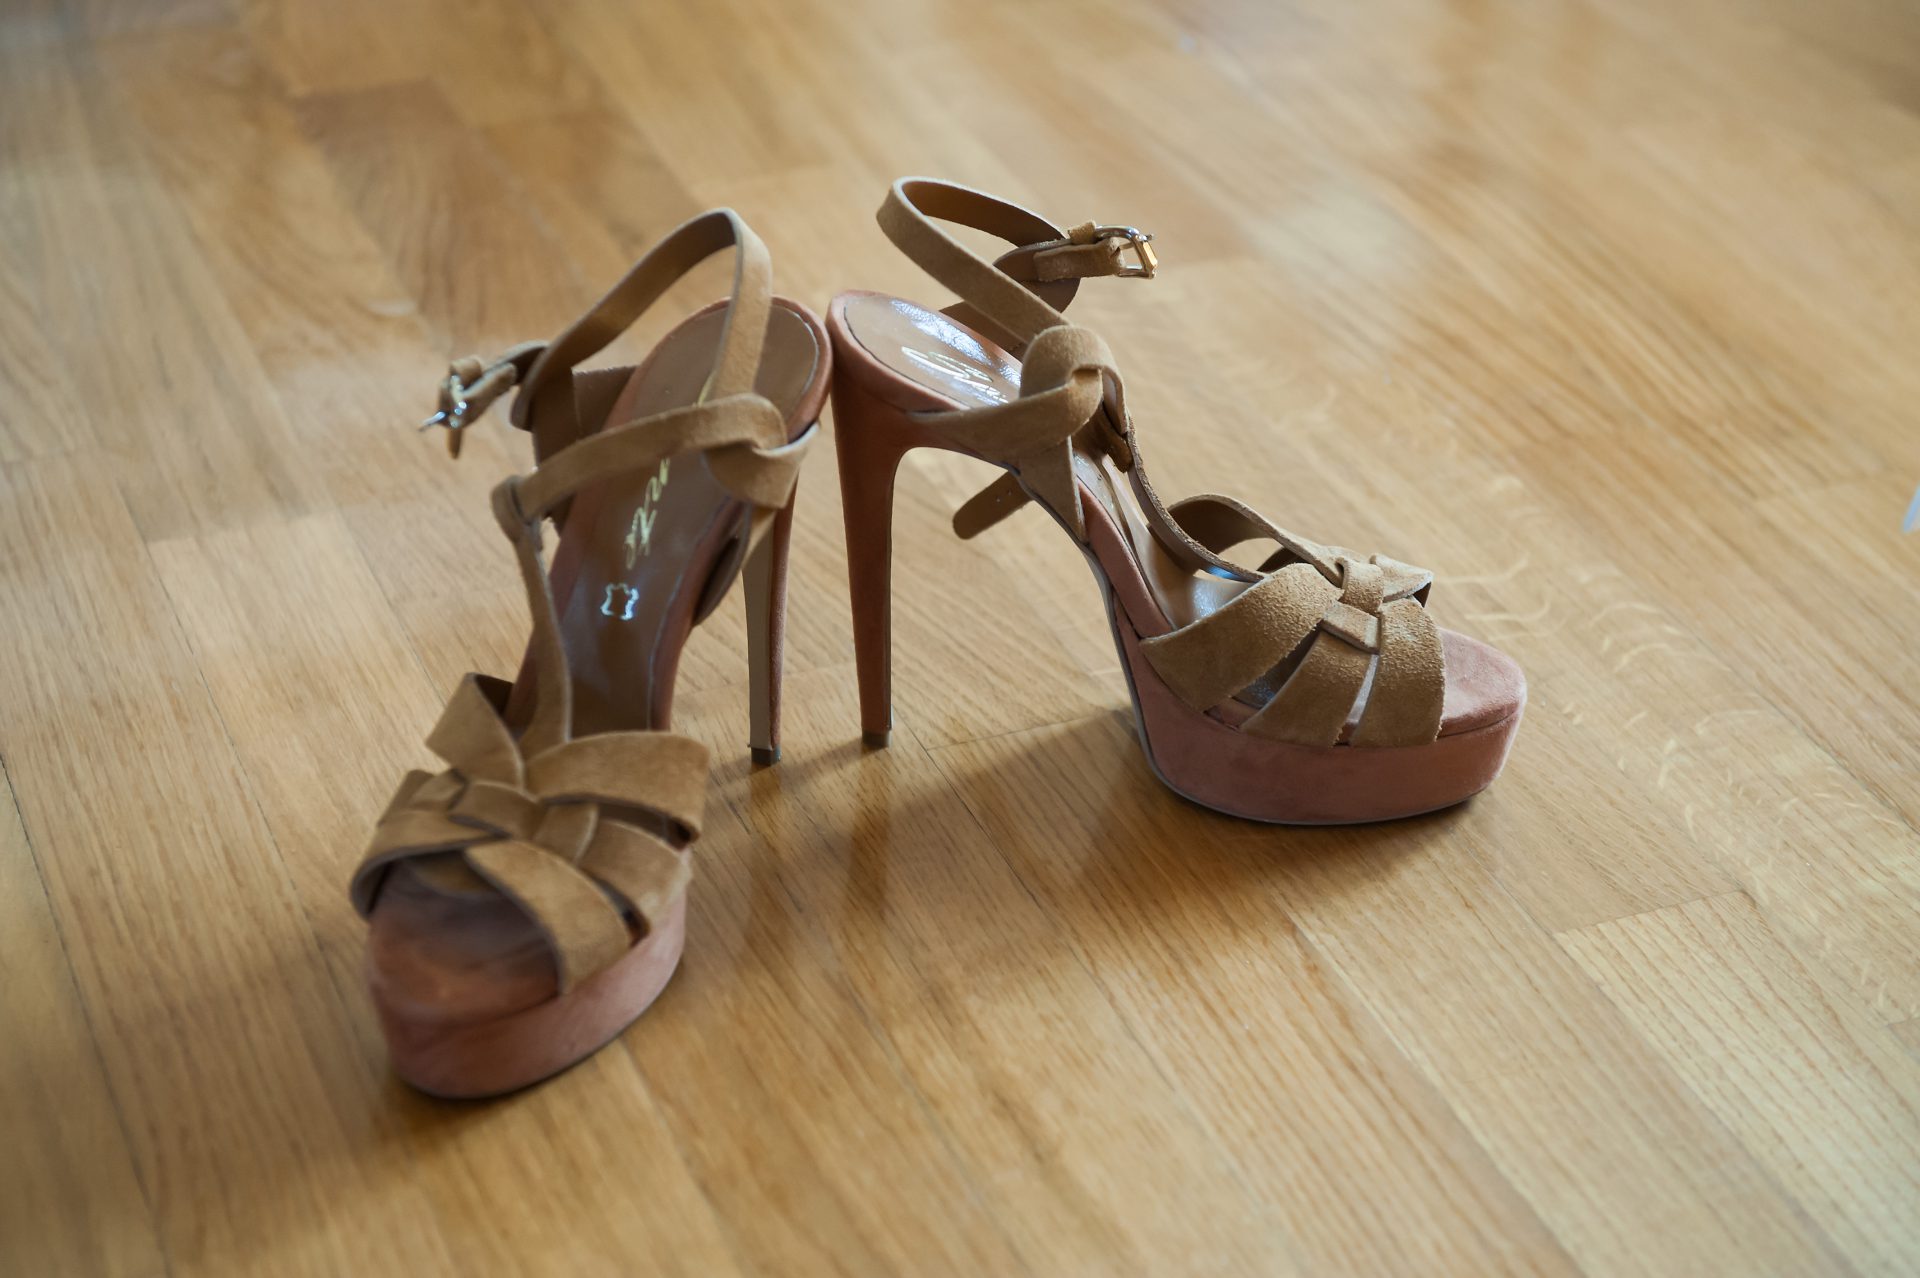 Νυφικά παπούτσια στην φωτογράφηση προετοιμασίας νύφης